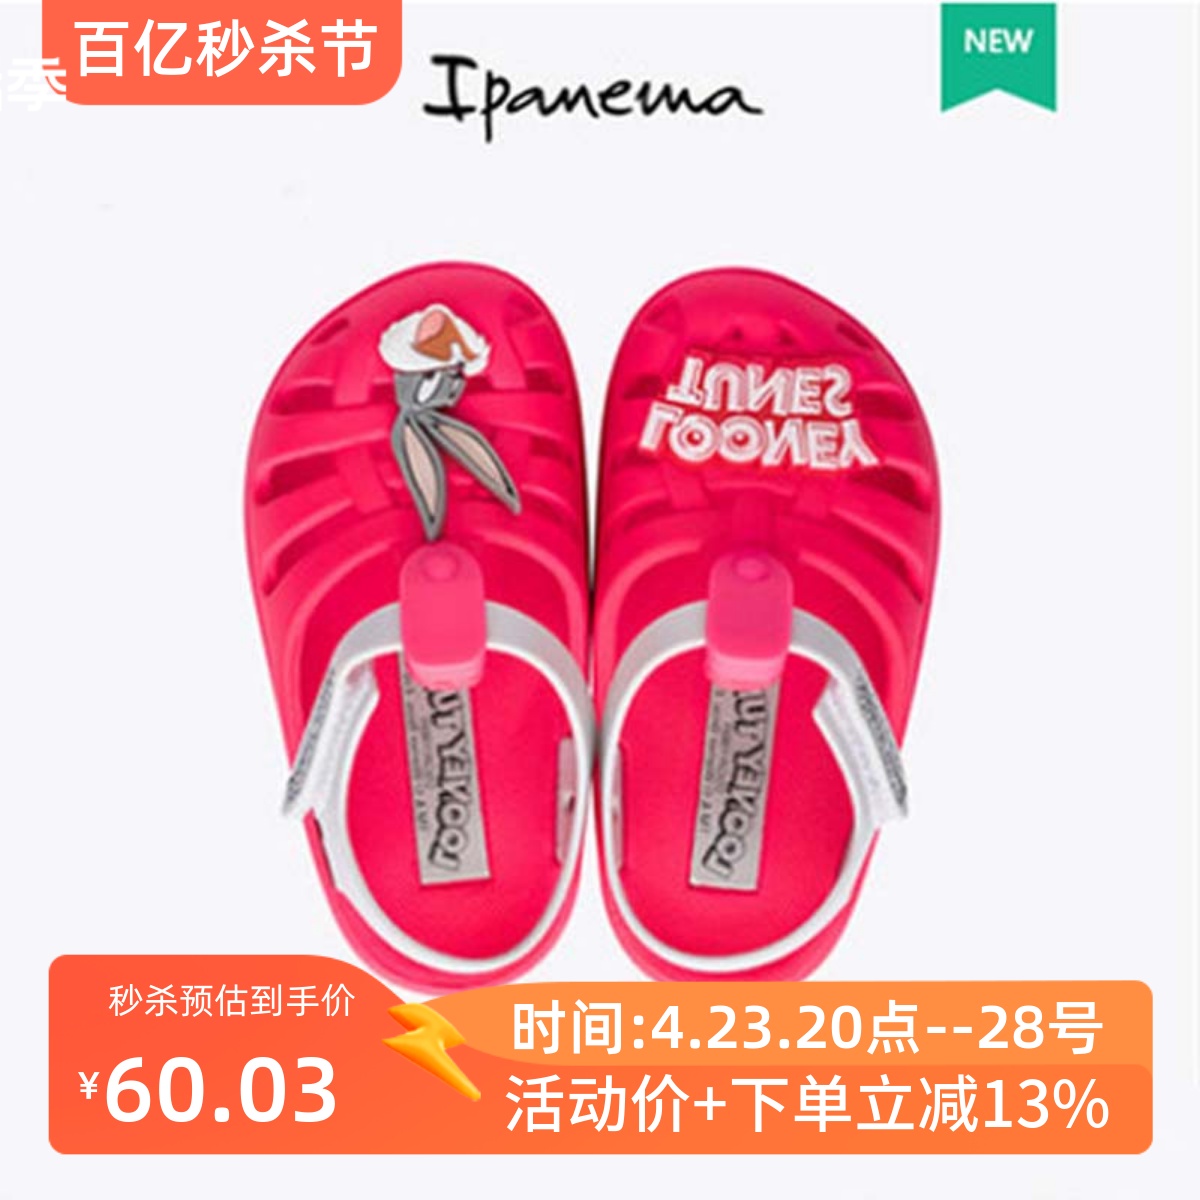 ipanema2020夏季新款兔八哥联名系列婴童洞洞鞋男女童包脚凉鞋